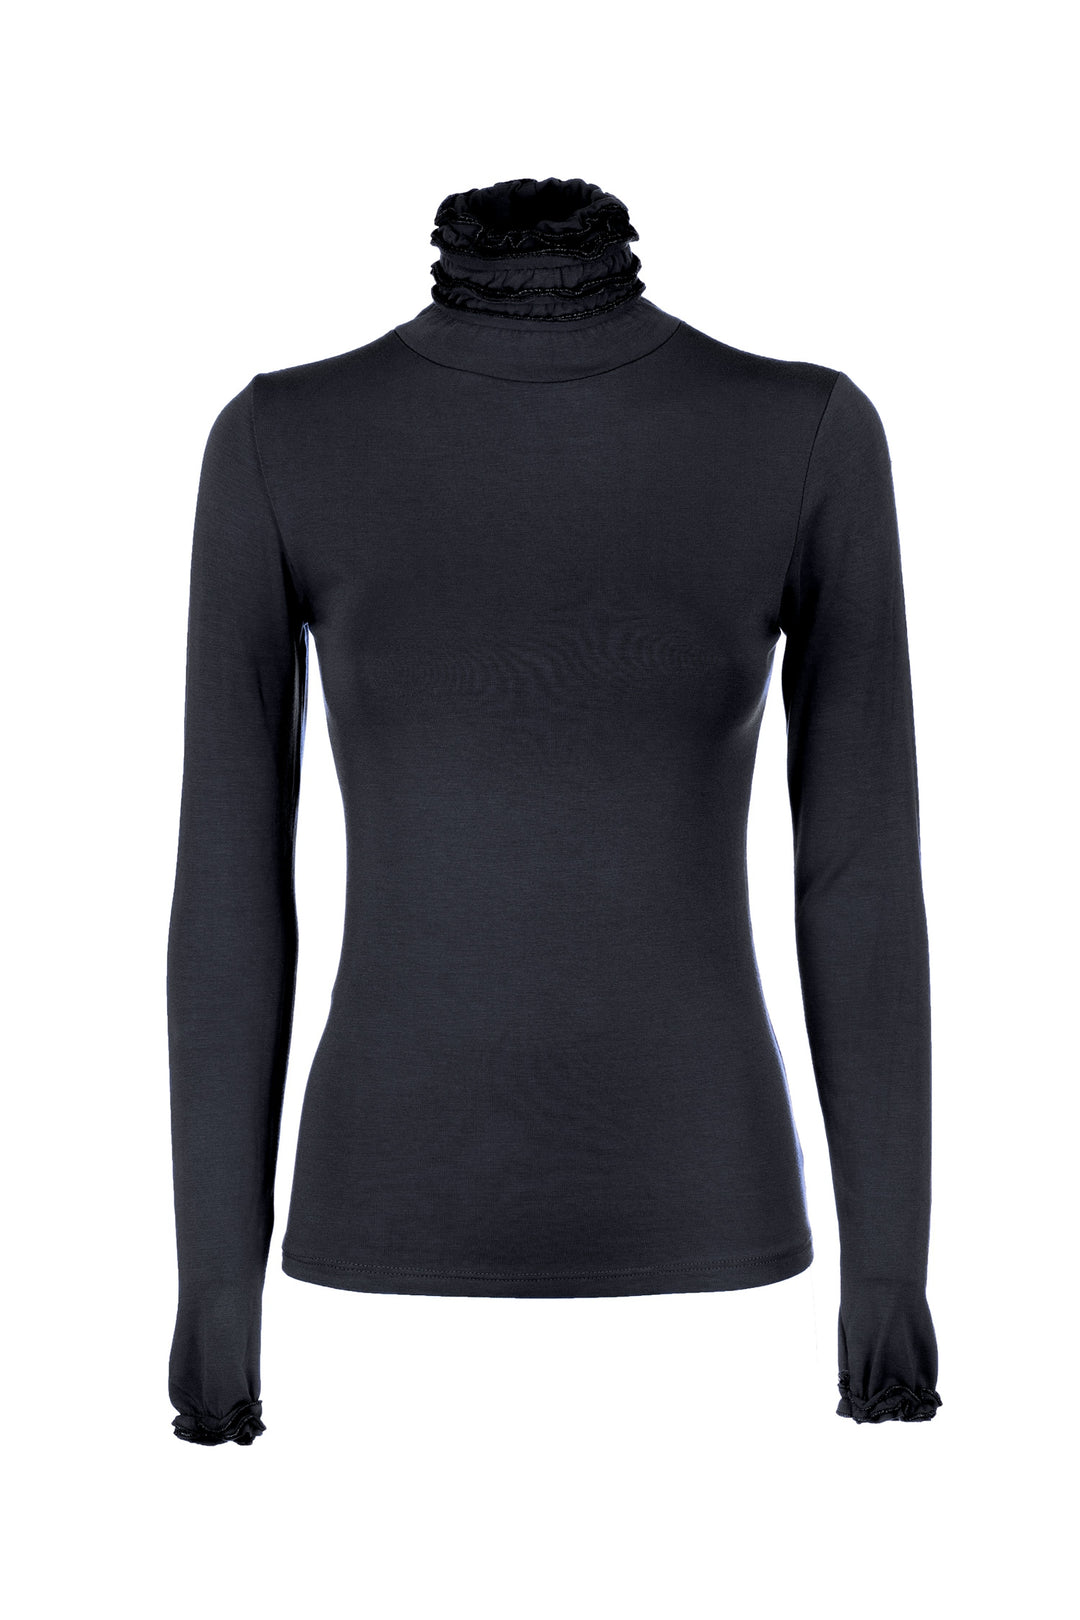 FRACOMINA Top slim nero in jersey stretch con collo alto con rouches - Mancinelli 1954